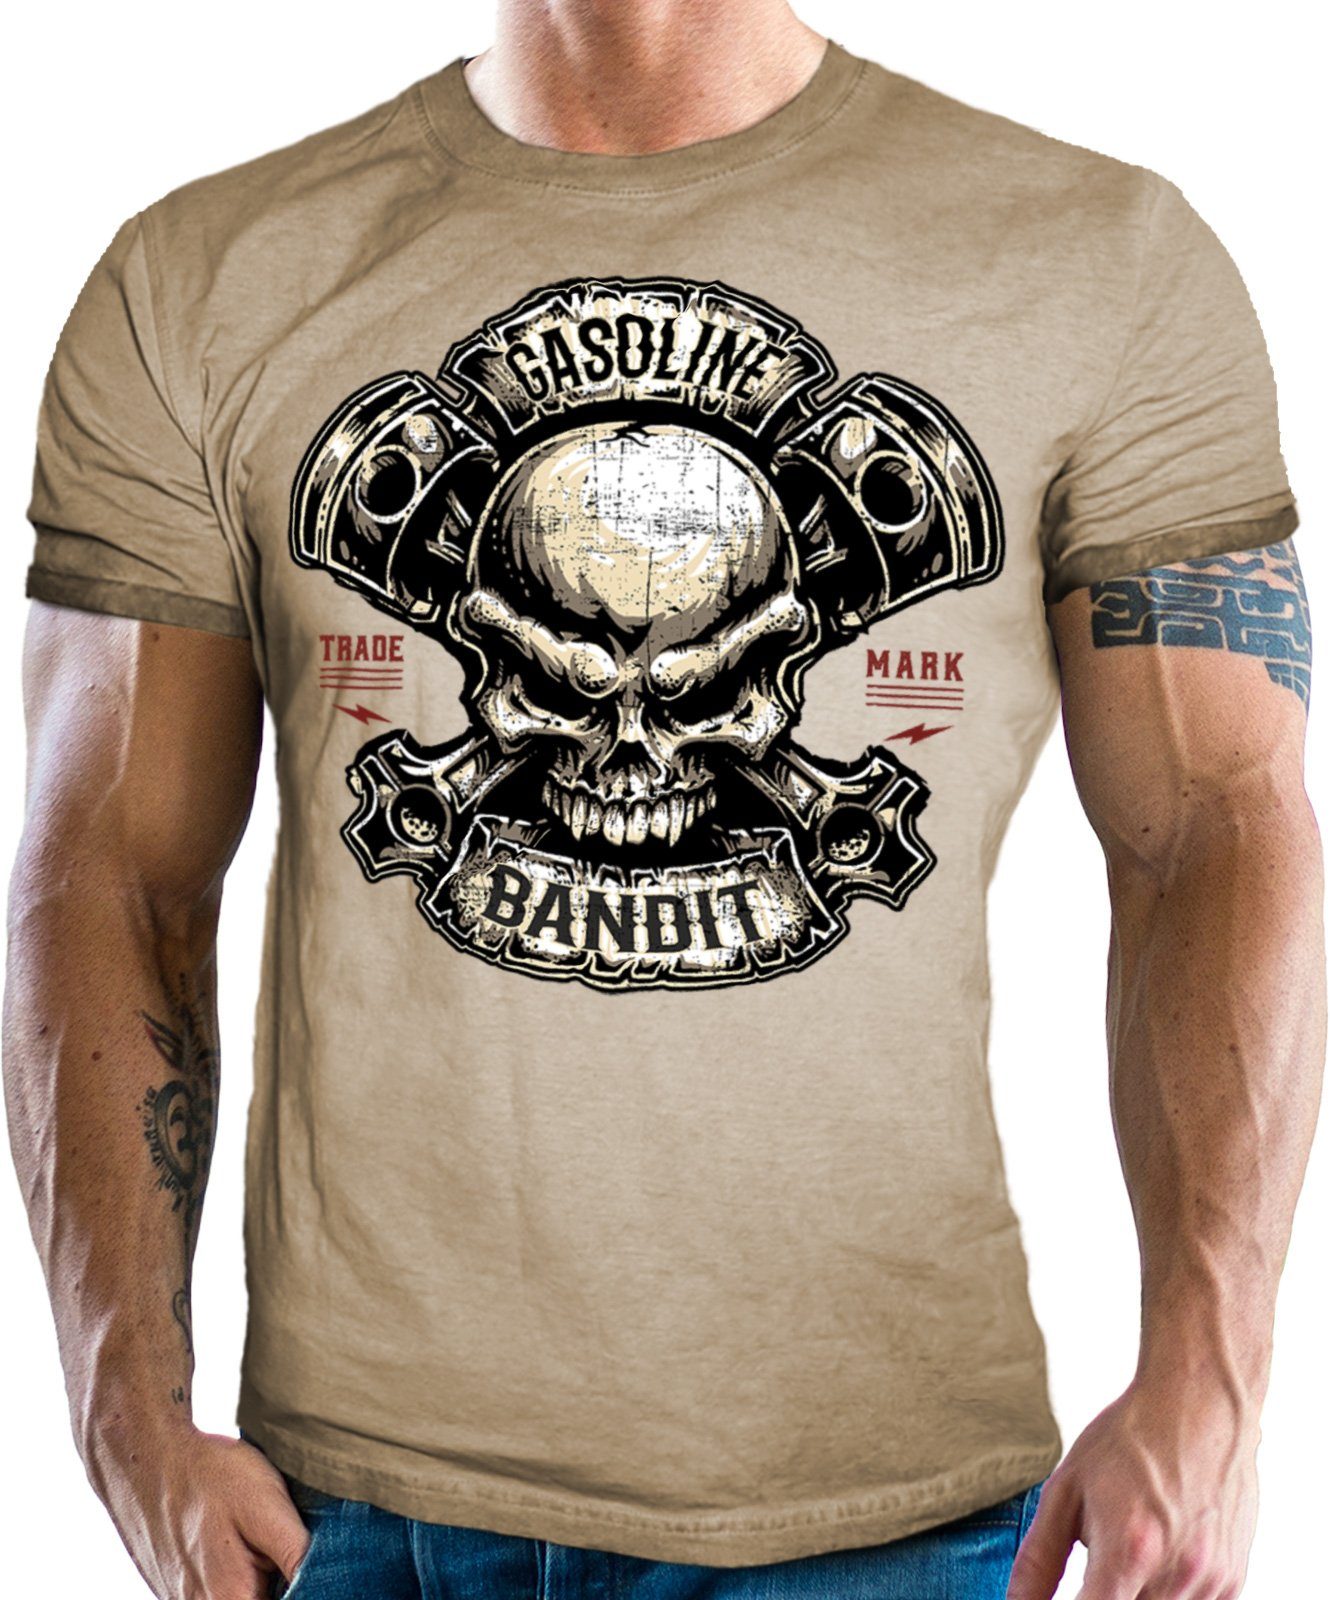 BANDIT® T-Shirt in Fans: sand Racer look für Skull Biker washed Piston GASOLINE